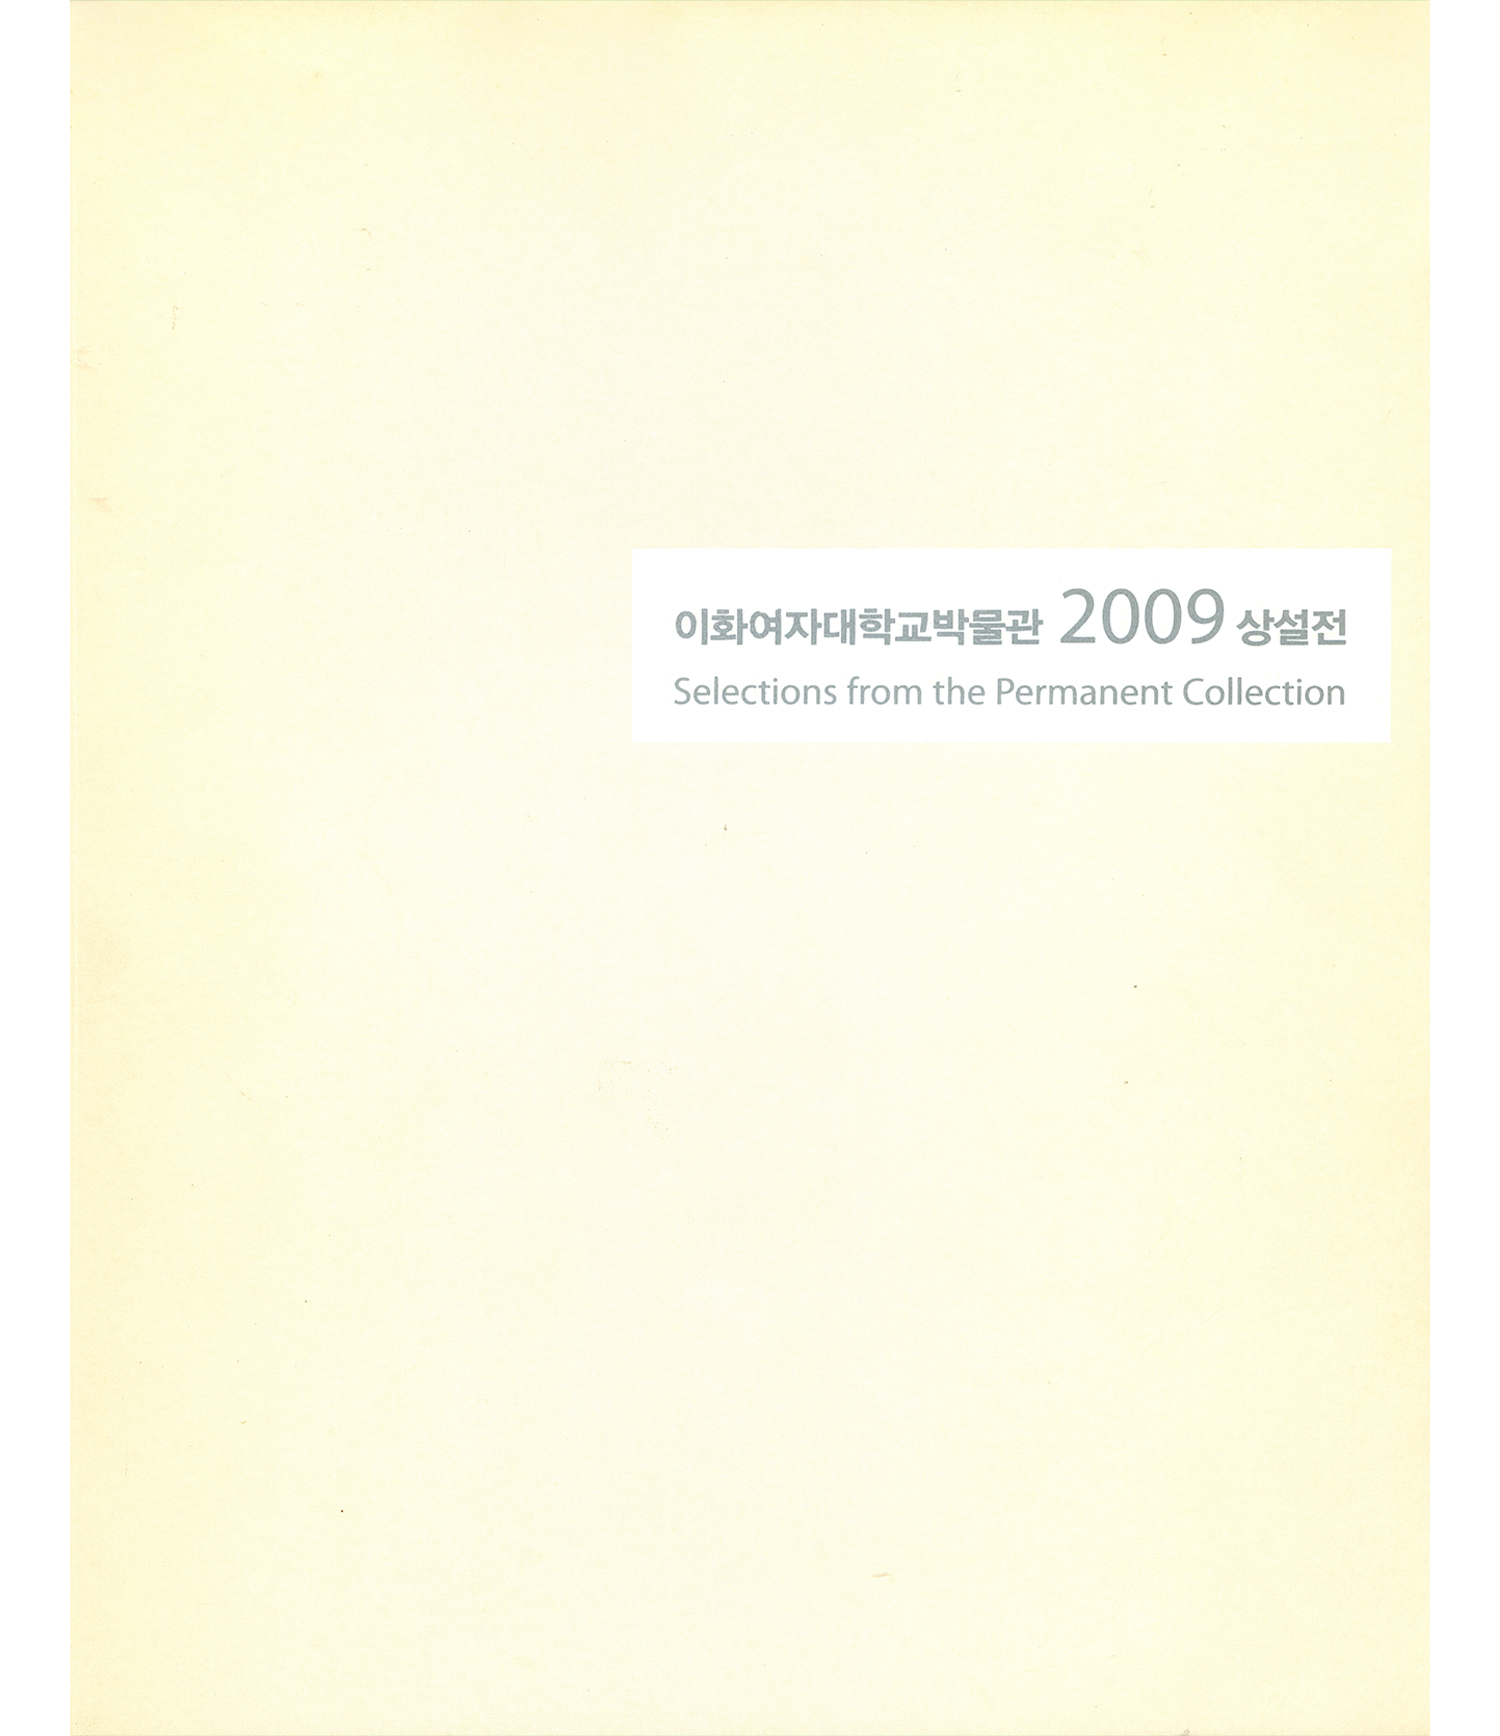 [상설전] 2009 소장품전 